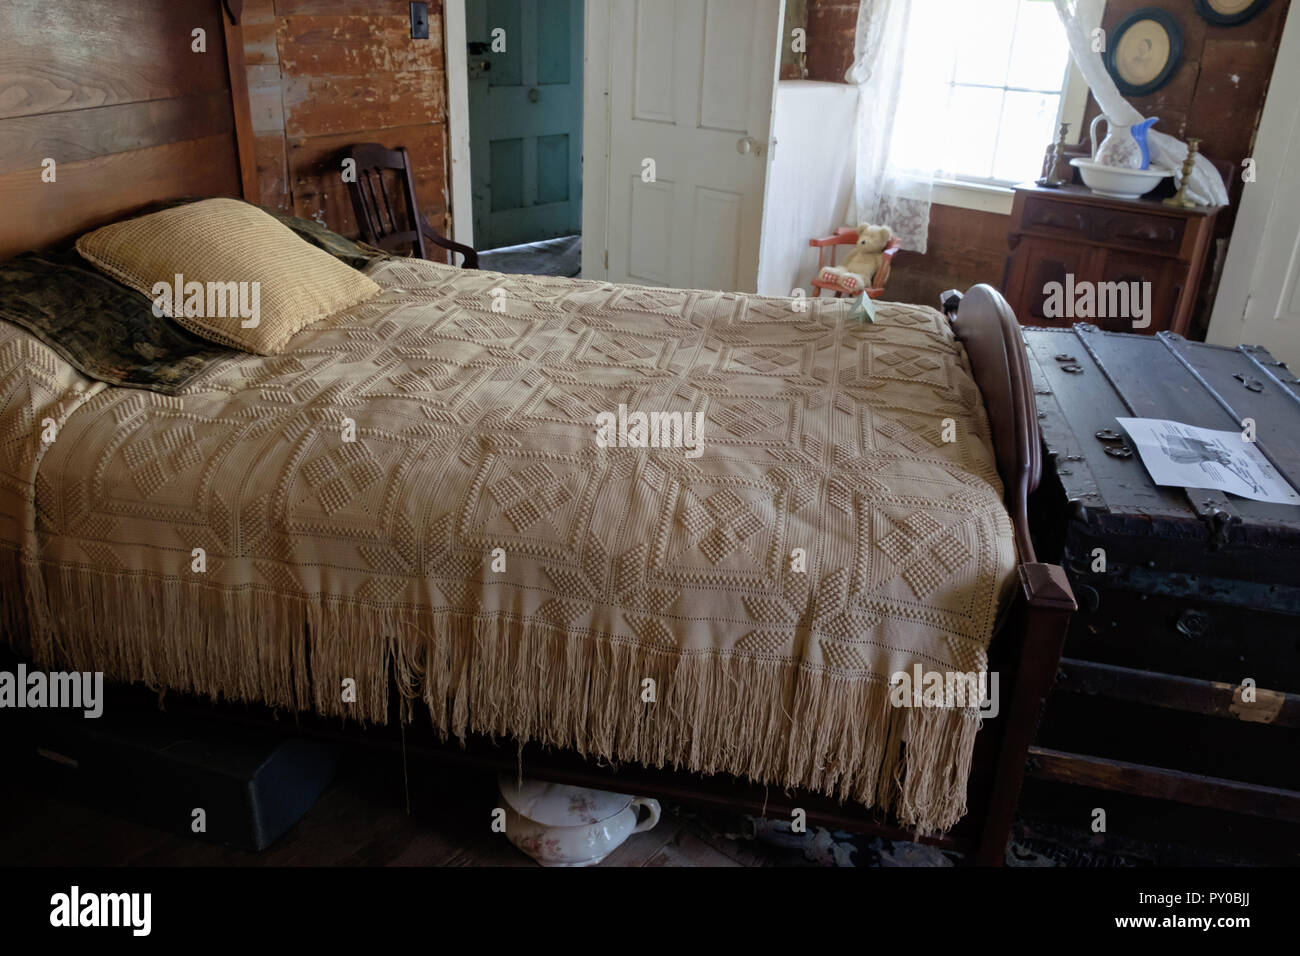 Cama antigua cubierta en la cama con almohadas y viejo tronco de madera rústica al pie de la cama. Interior de una casa en la aldea histórica plaza de castaños, McKinney, Texas. Foto de stock